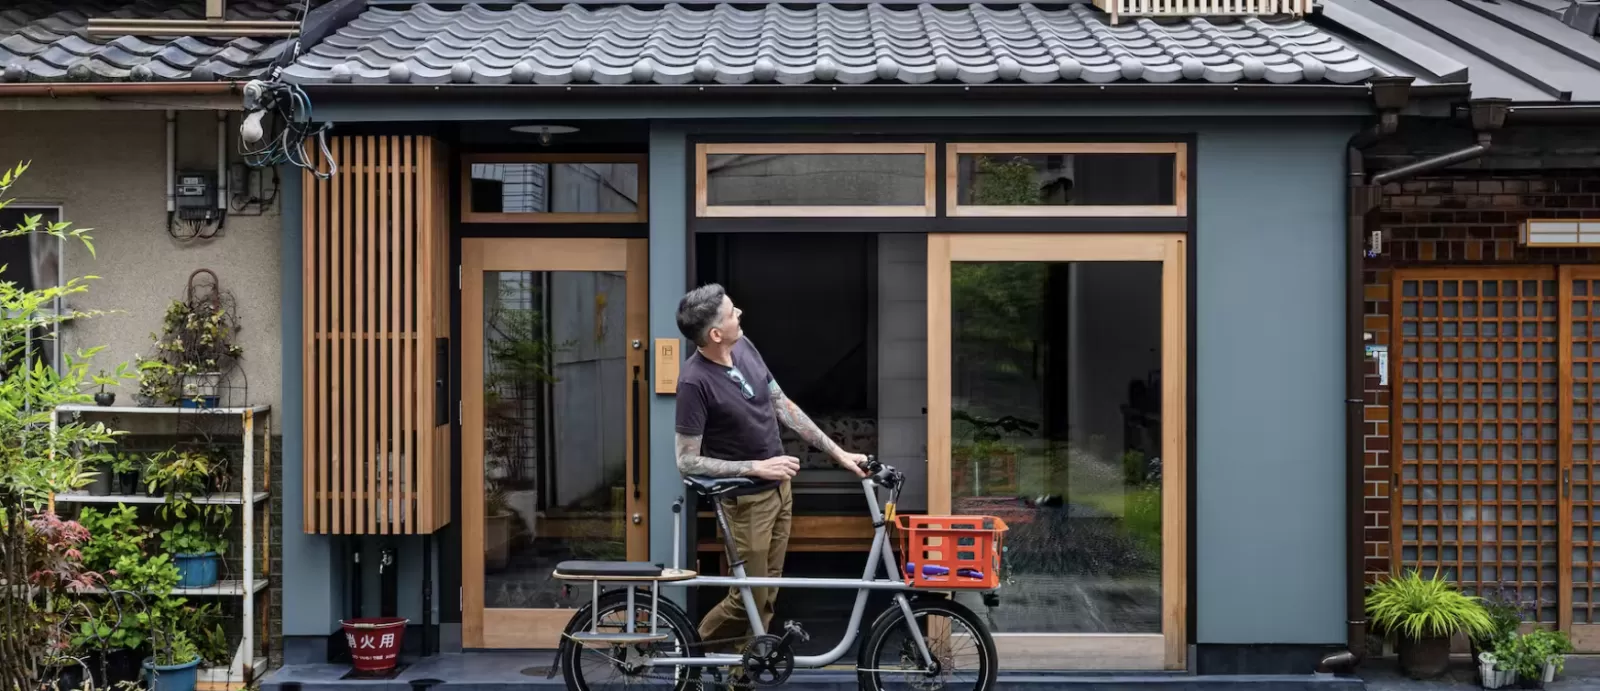 Mẫu biệt thự đẹp đơn giản trong góc phố Nhật Bản dành cho cặp đôi trung niên